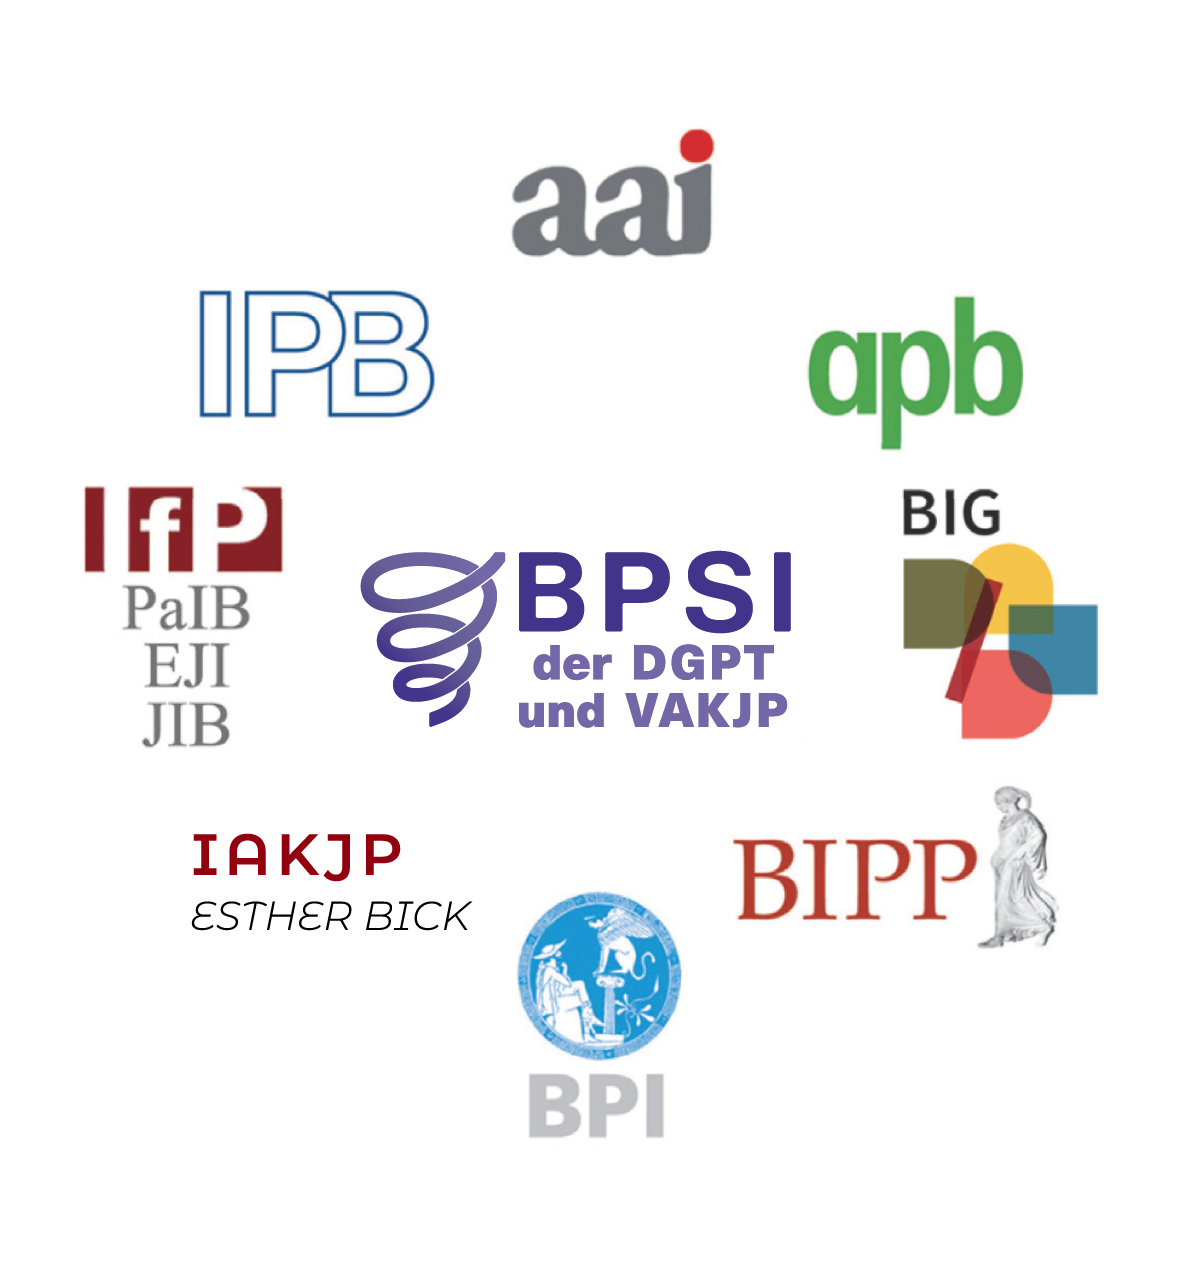 Auf dem Bild zu sehen sind die Logos der 11 Berliner psychologischen Institute der DGPT und VAKJP, kurz BPSI